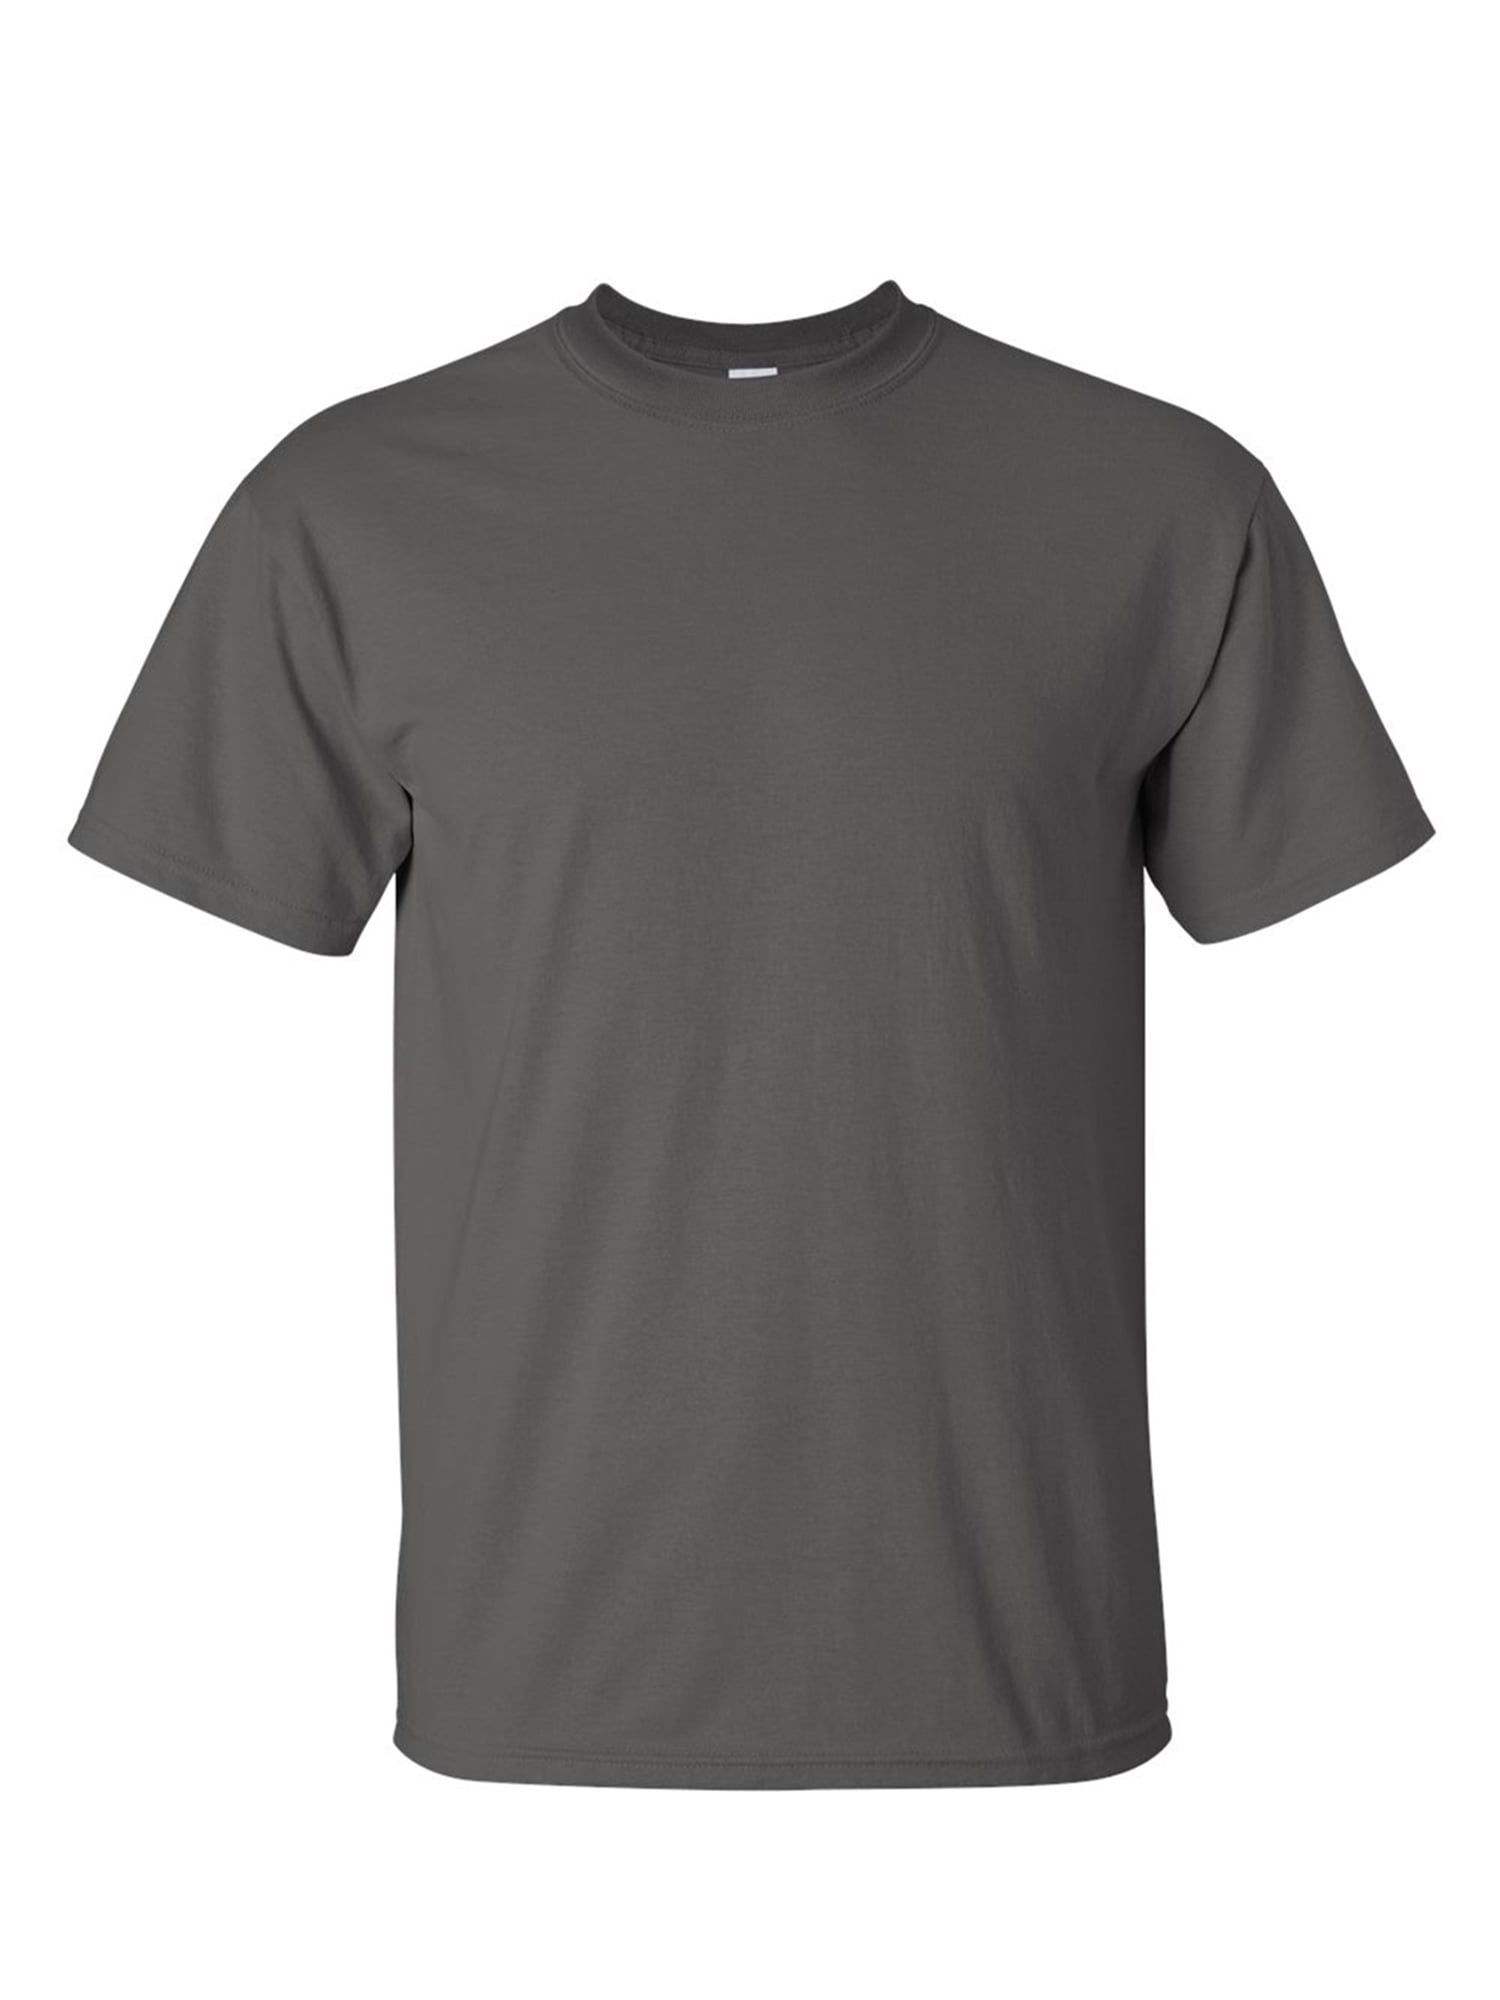 Gildan Ultra Cotton Tall T-Shirt - 2000T Chracoal T shirts XLT T Shirts ...